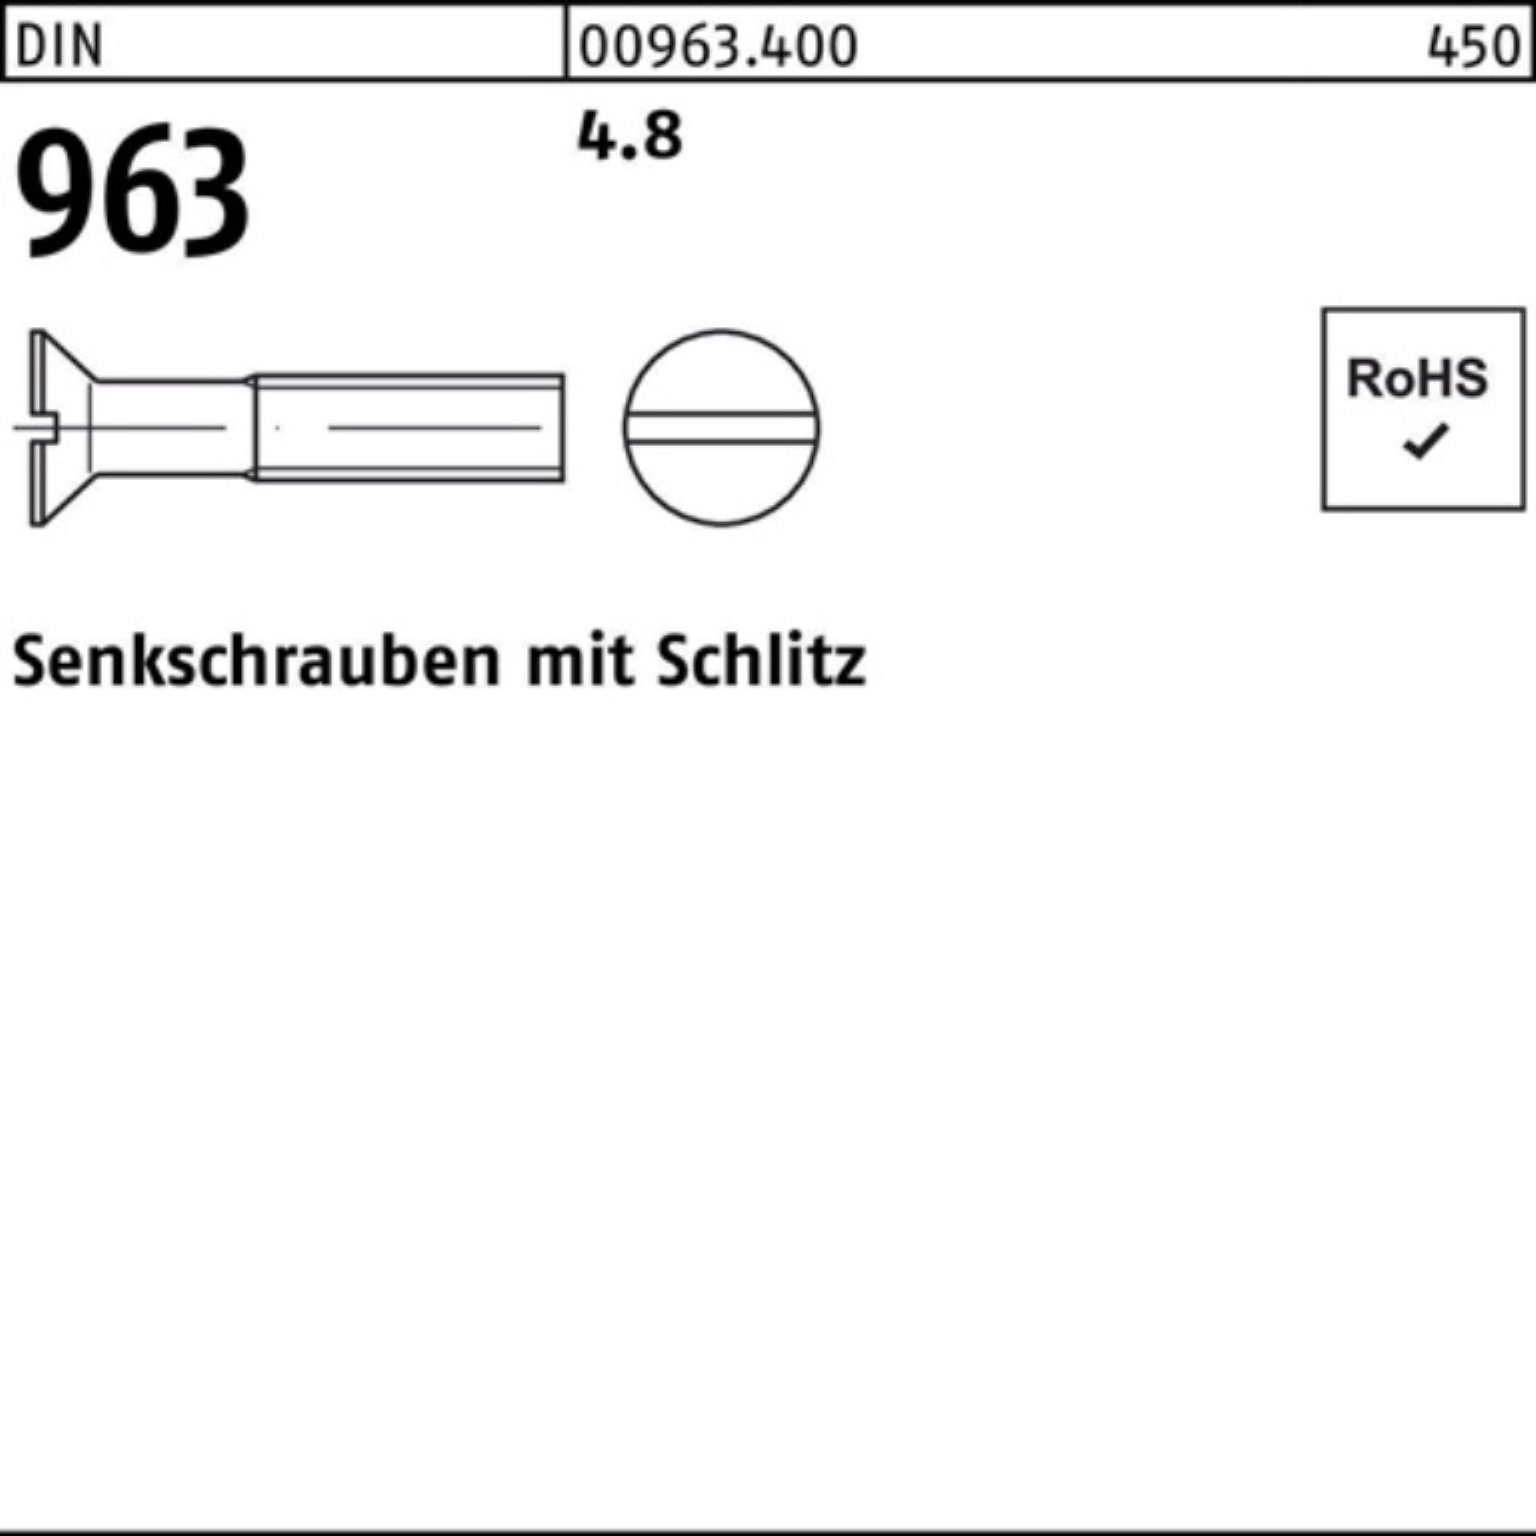 M2x Reyher 10 96 2000er Schlitz DIN Pack 2000 Senkschraube DIN 4.8 Senkschraube 963 Stück